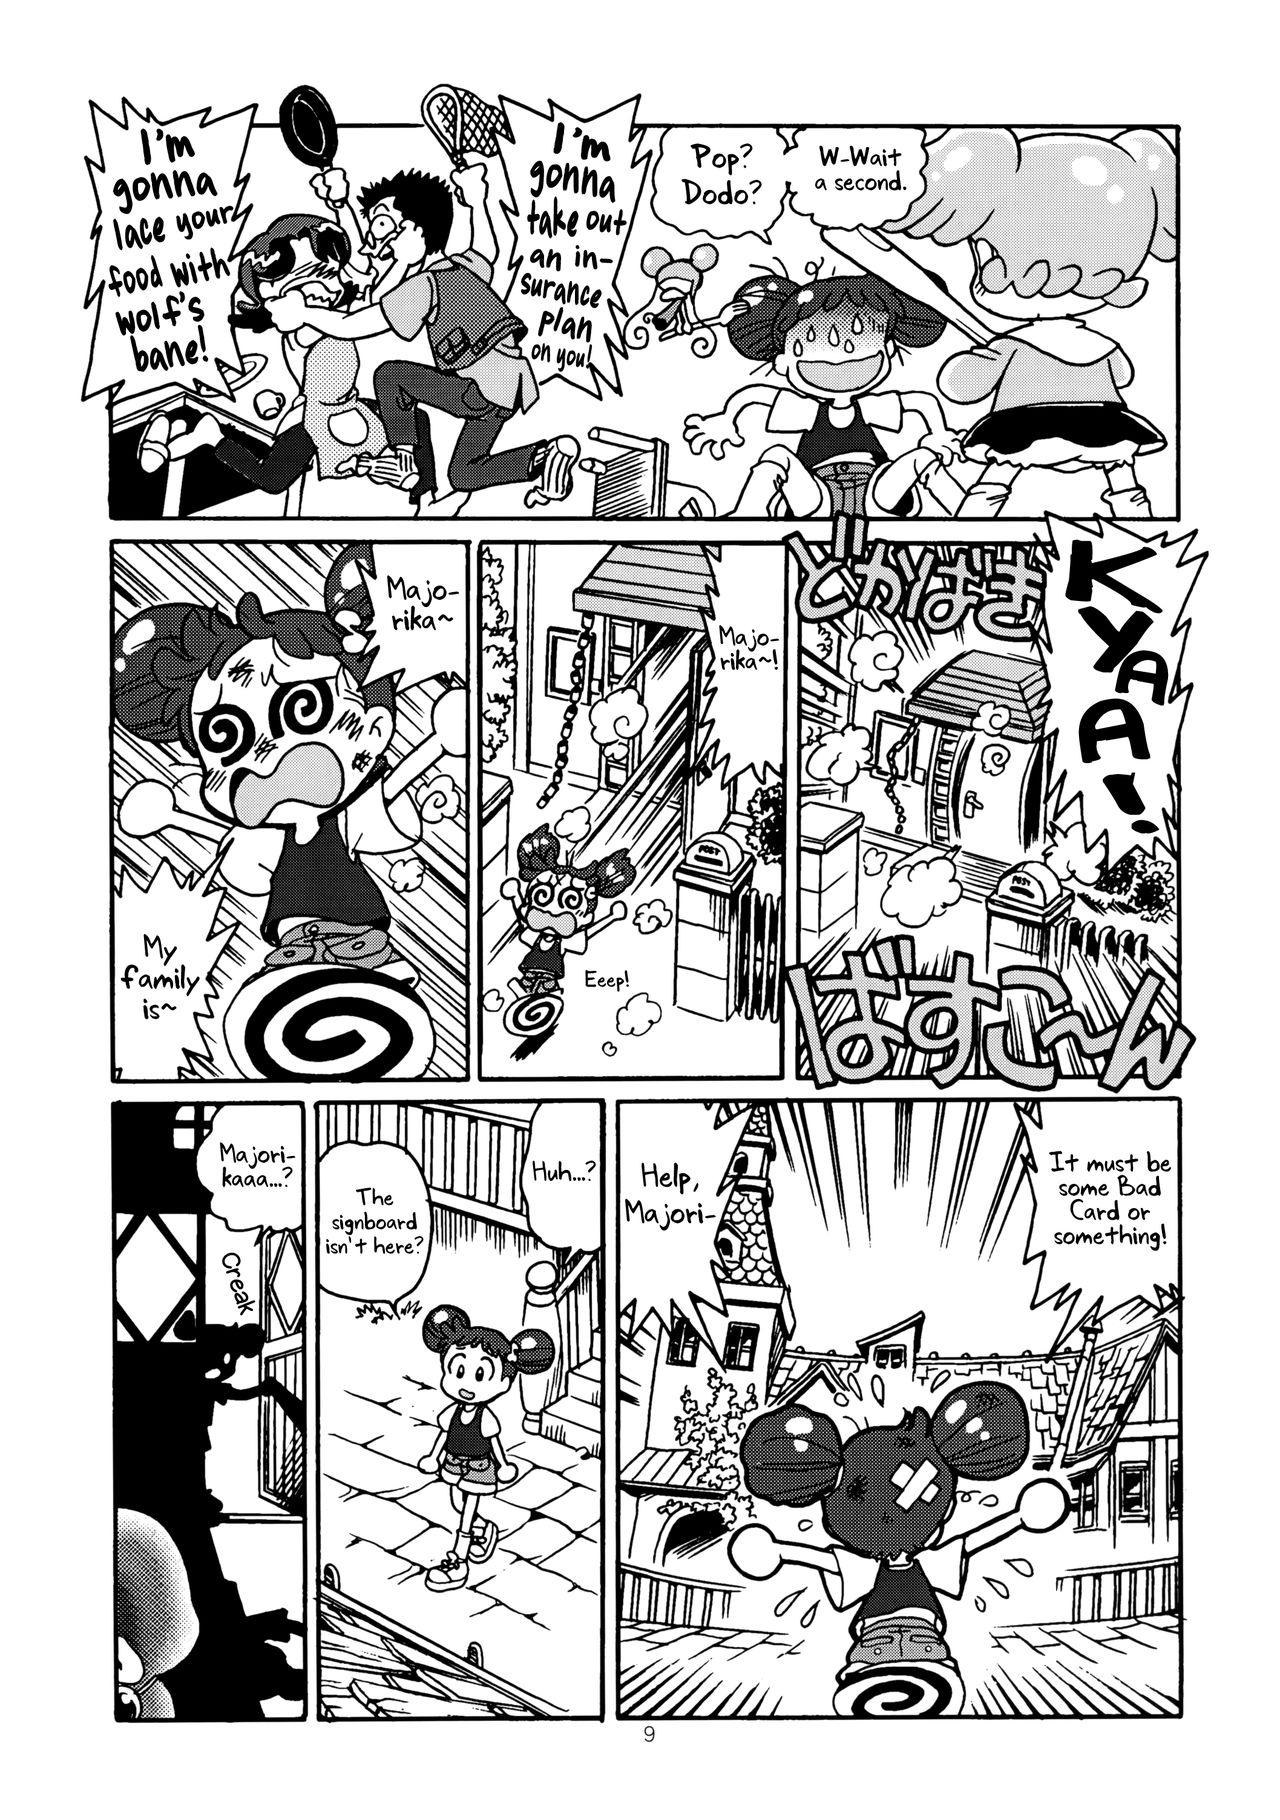 Porno Yuusaku No Doremi♪ - Ojamajo doremi Classroom - Page 12